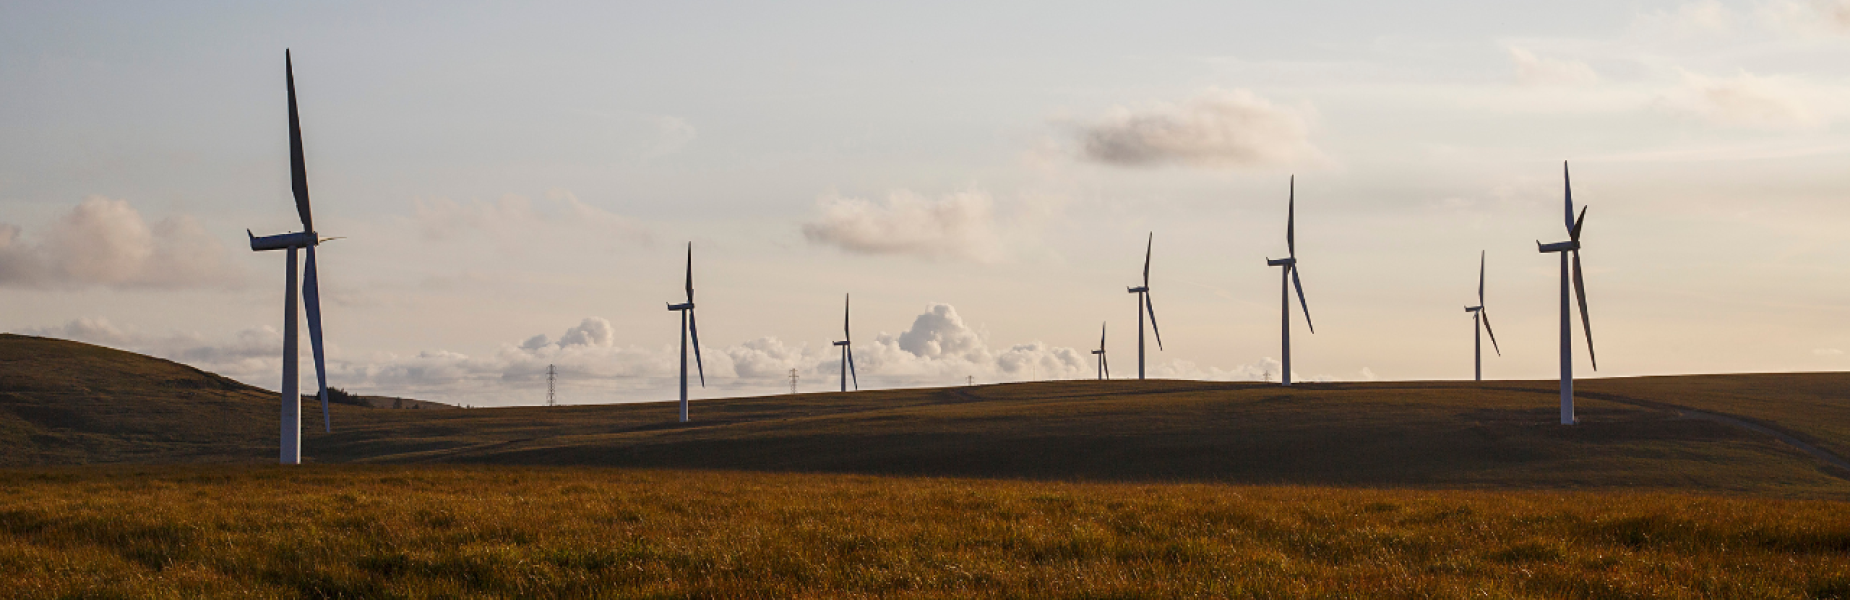 A wind farm in Wales